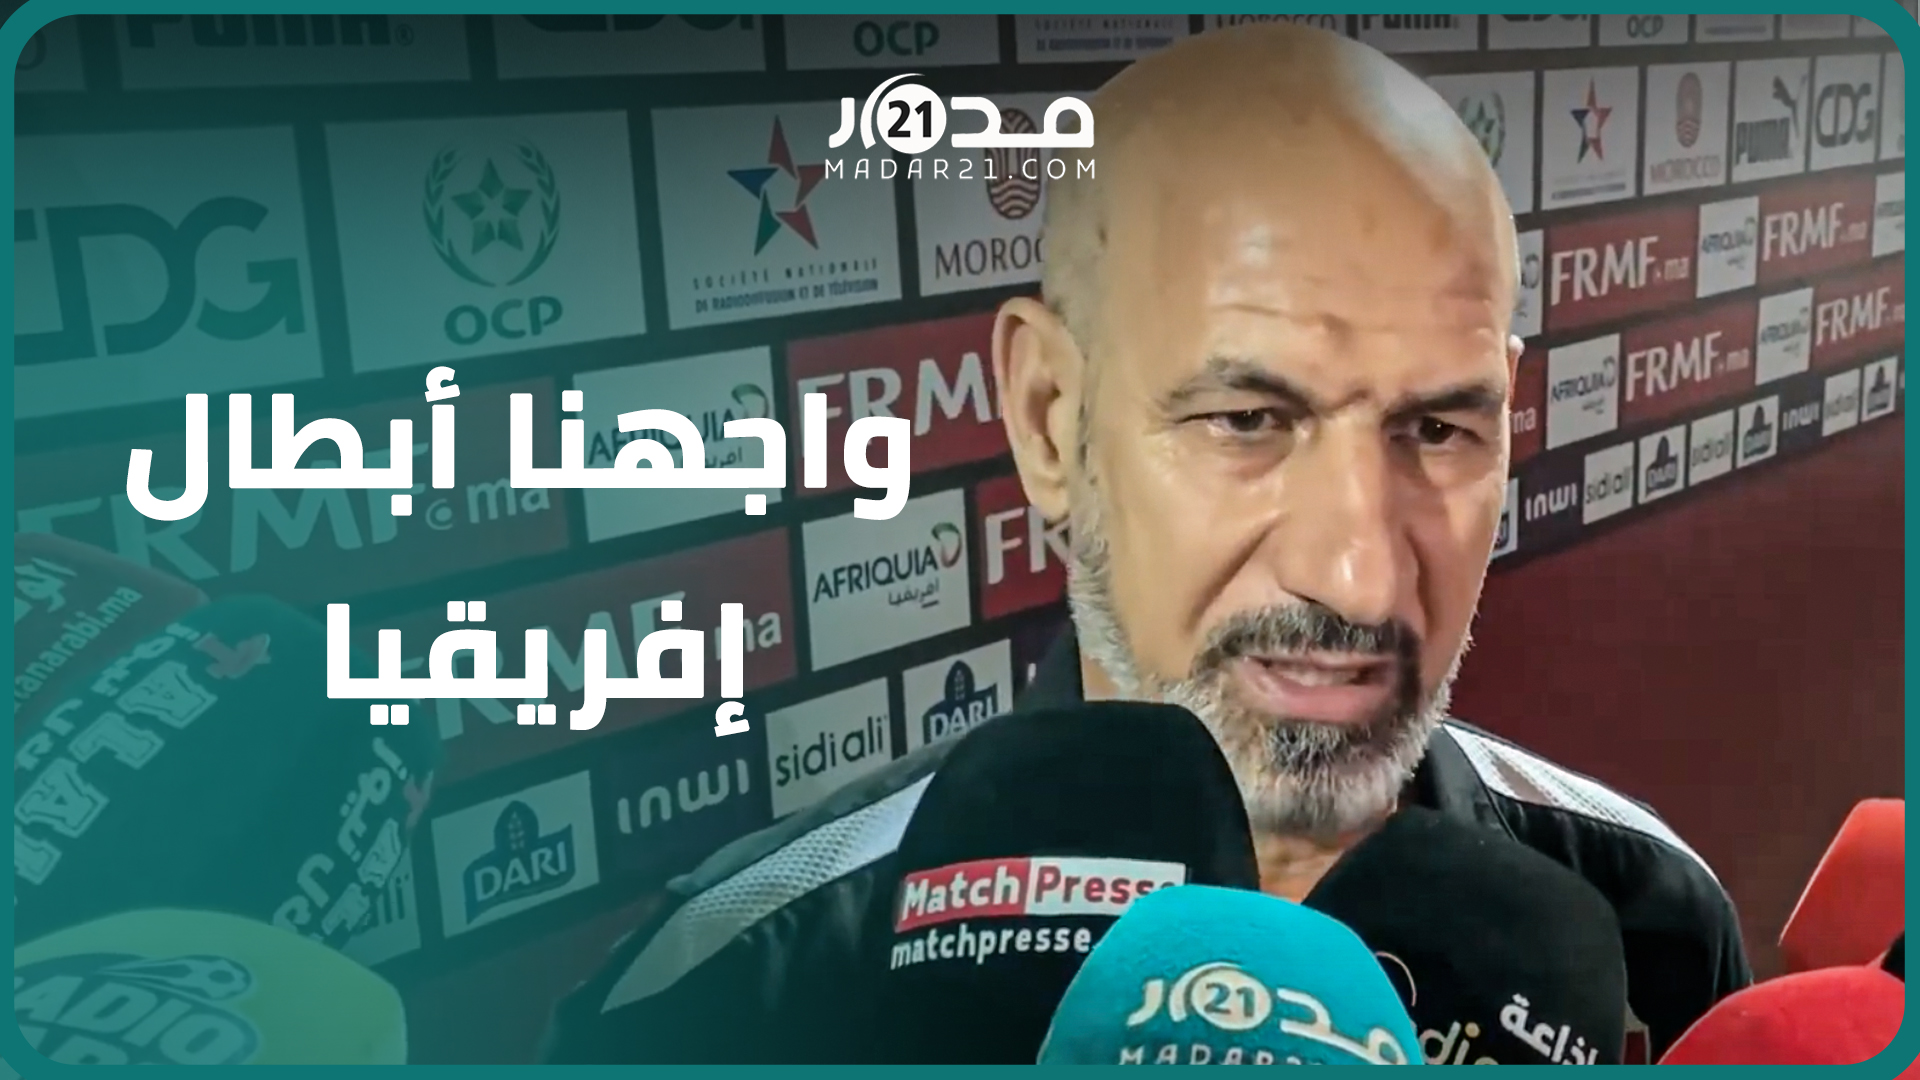 مدرب العراق: المنتخب المغربي كان اختبارا حقيقيا لنا ومواجهته مفيدة بشكل كبير في طريق استعداداتنا